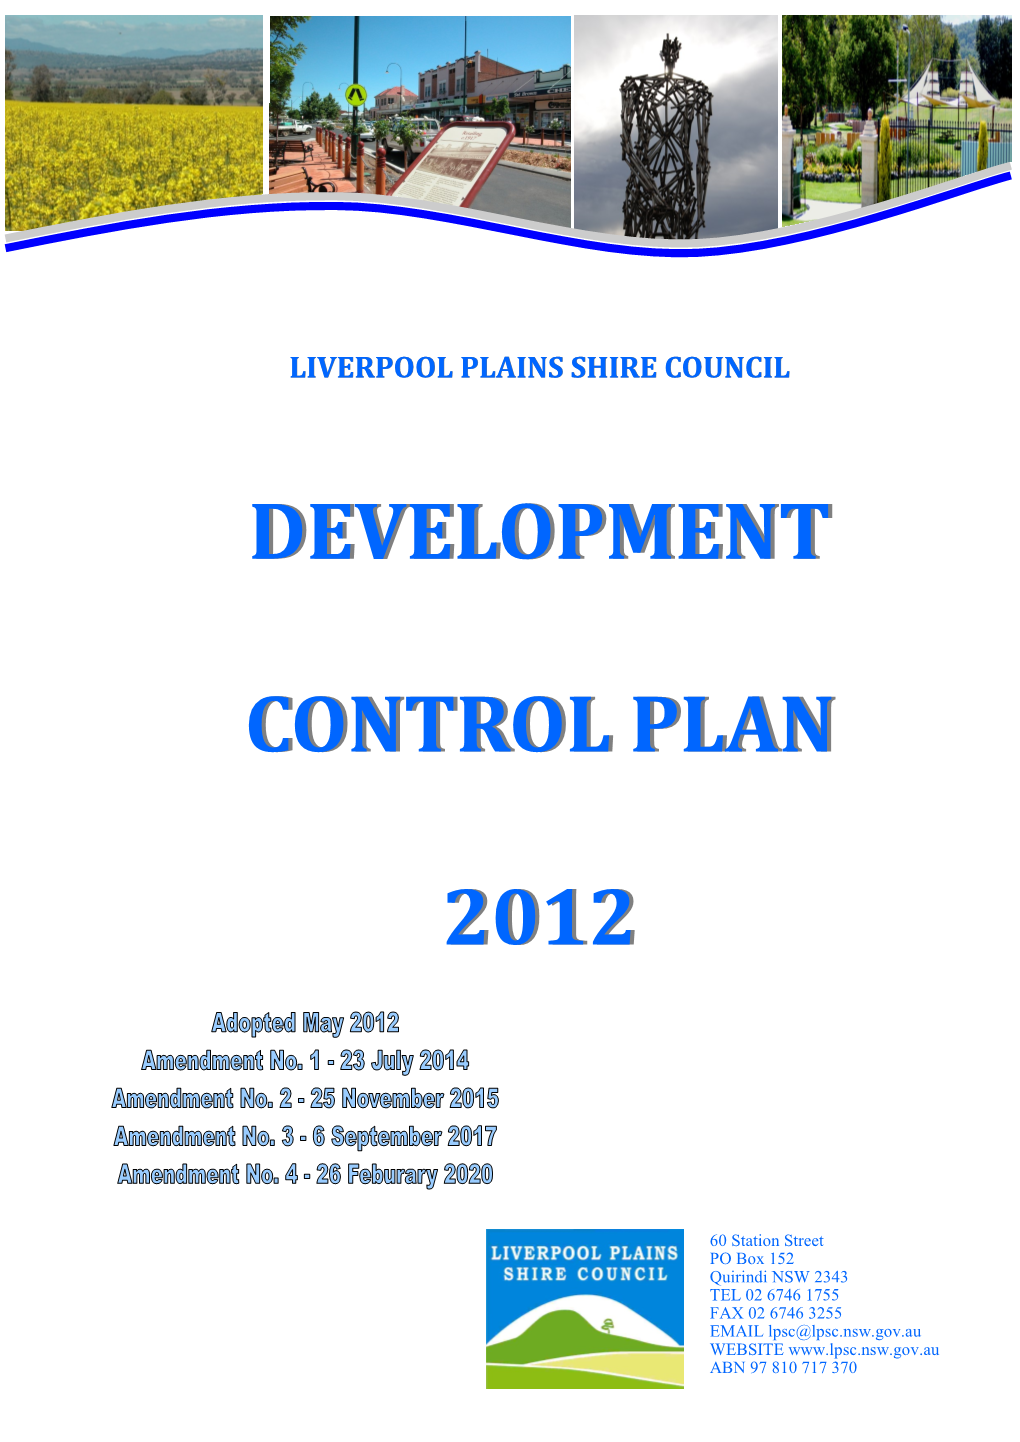 Liverpool Plains Shire Council Development Control Plan 2012